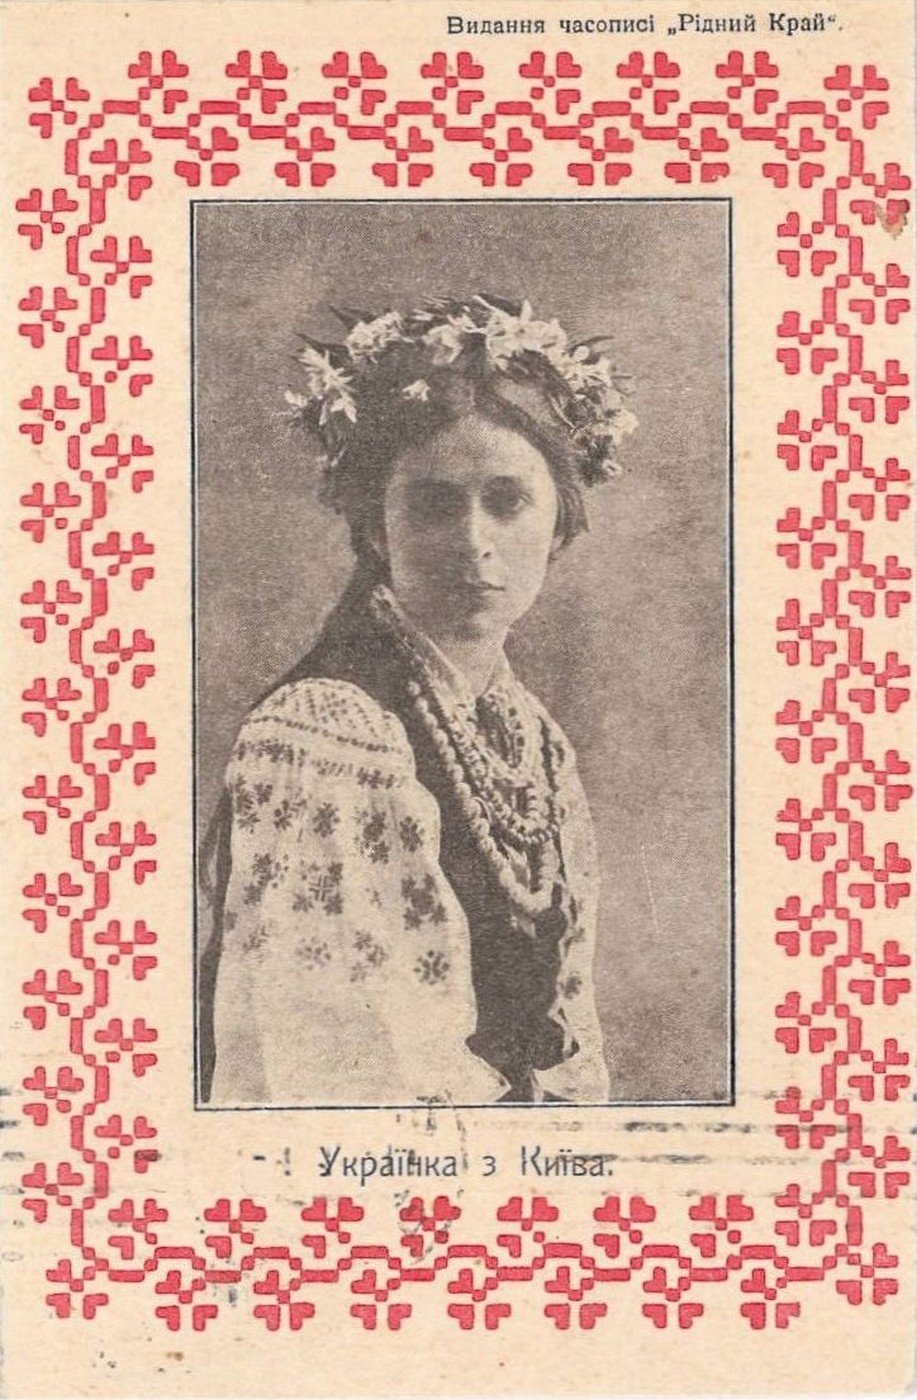 Поштова картка з вітанням. 1911 р.